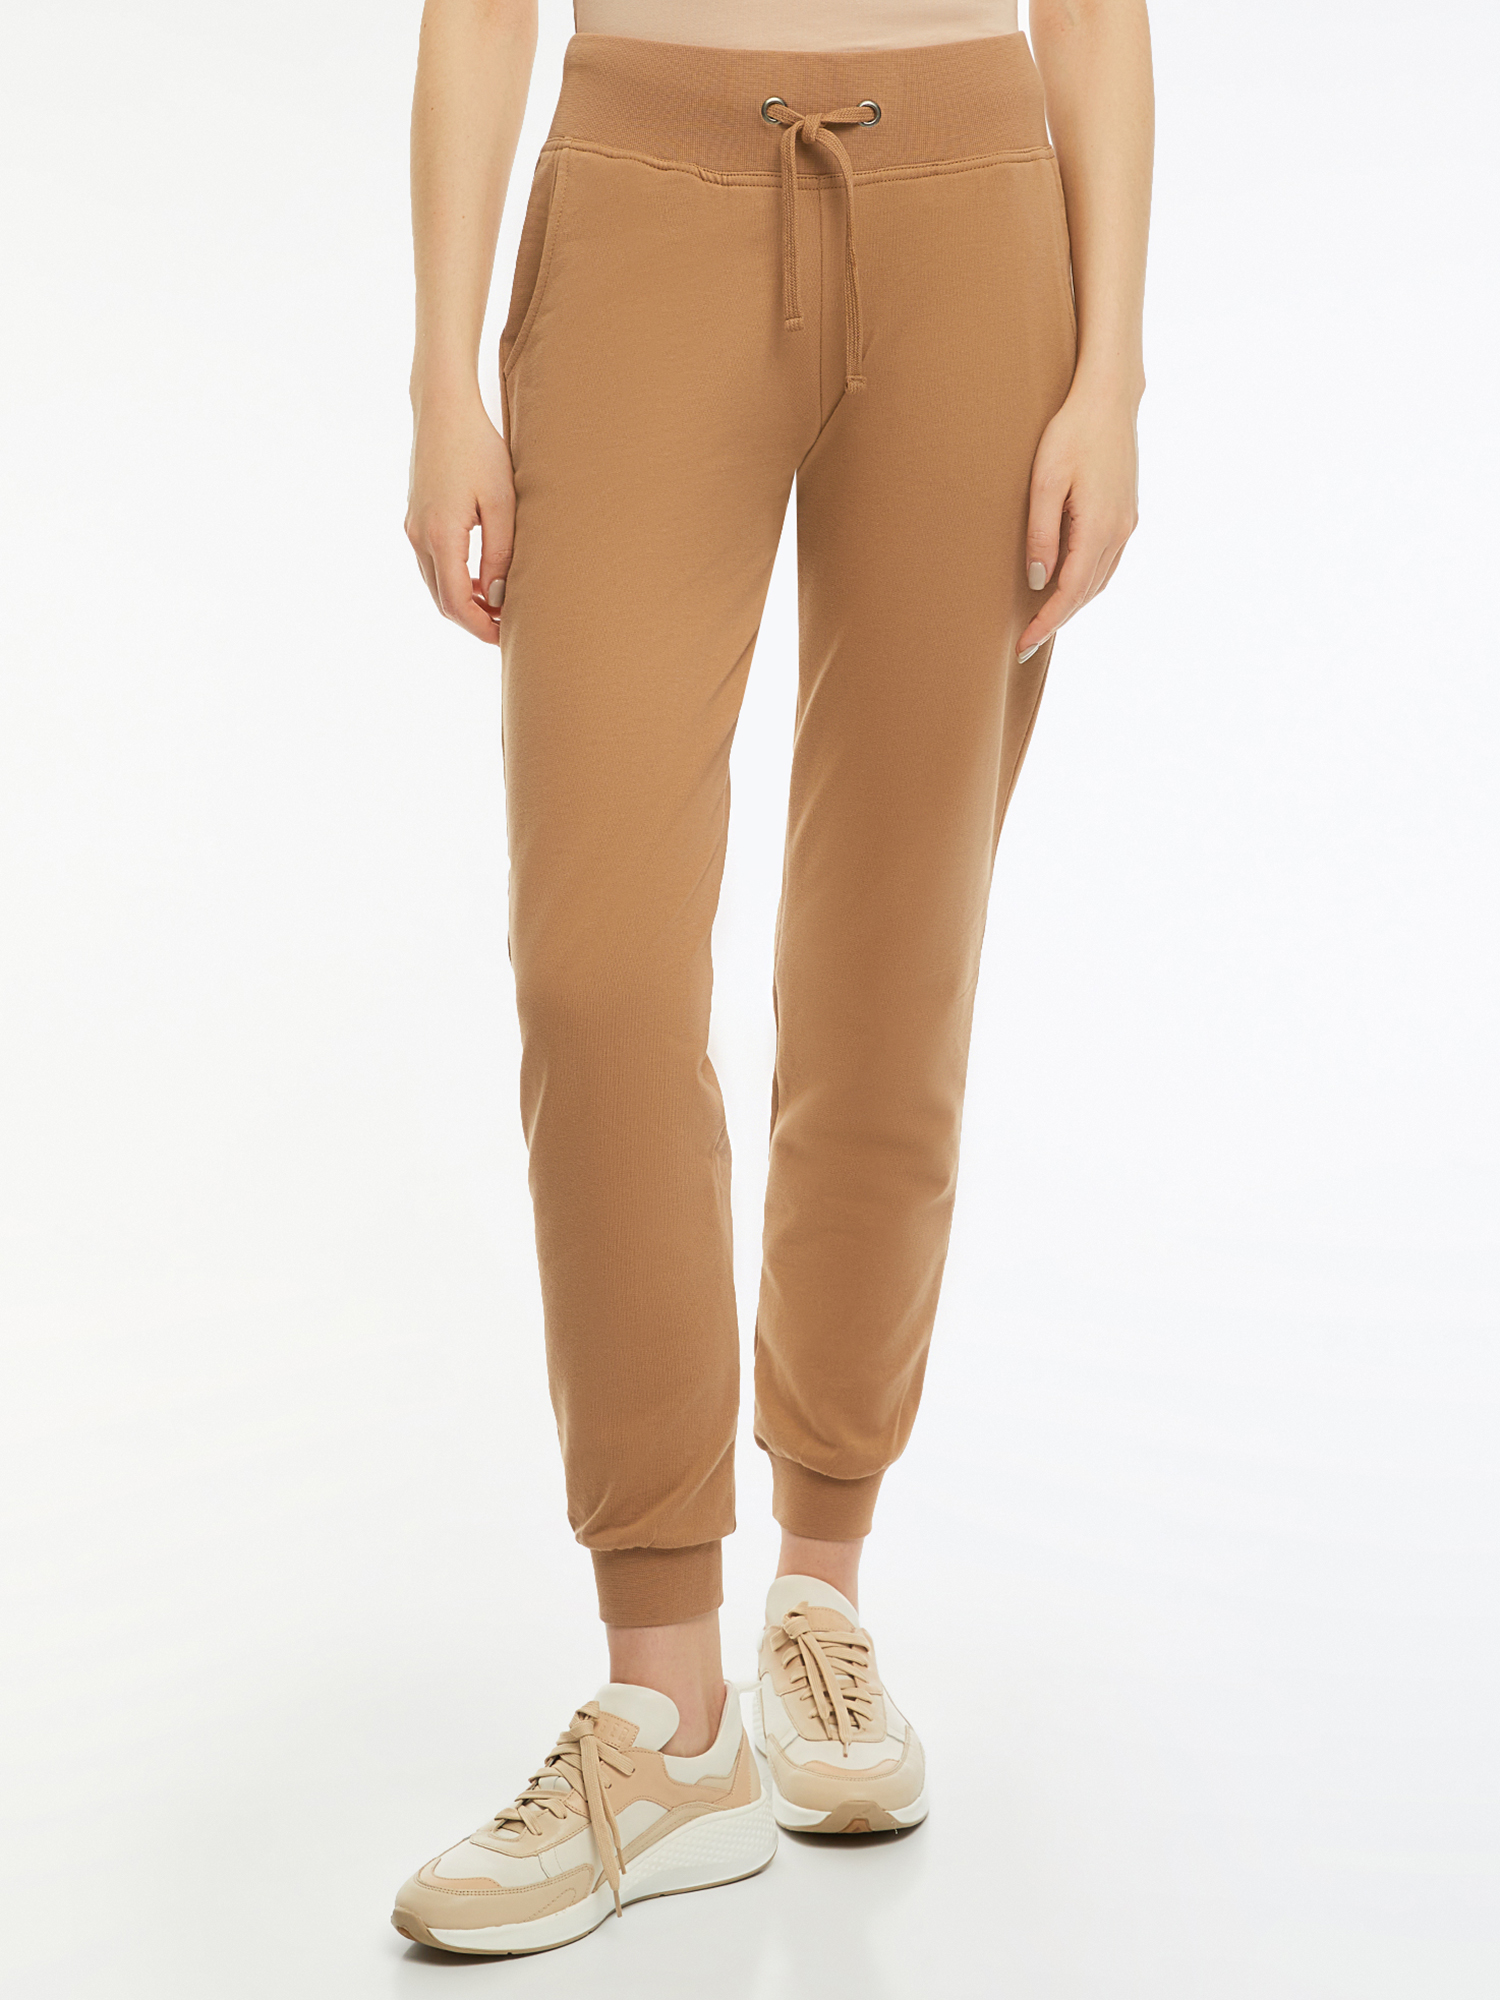 Спортивные брюки женские oodji 16700030-5B коричневые L